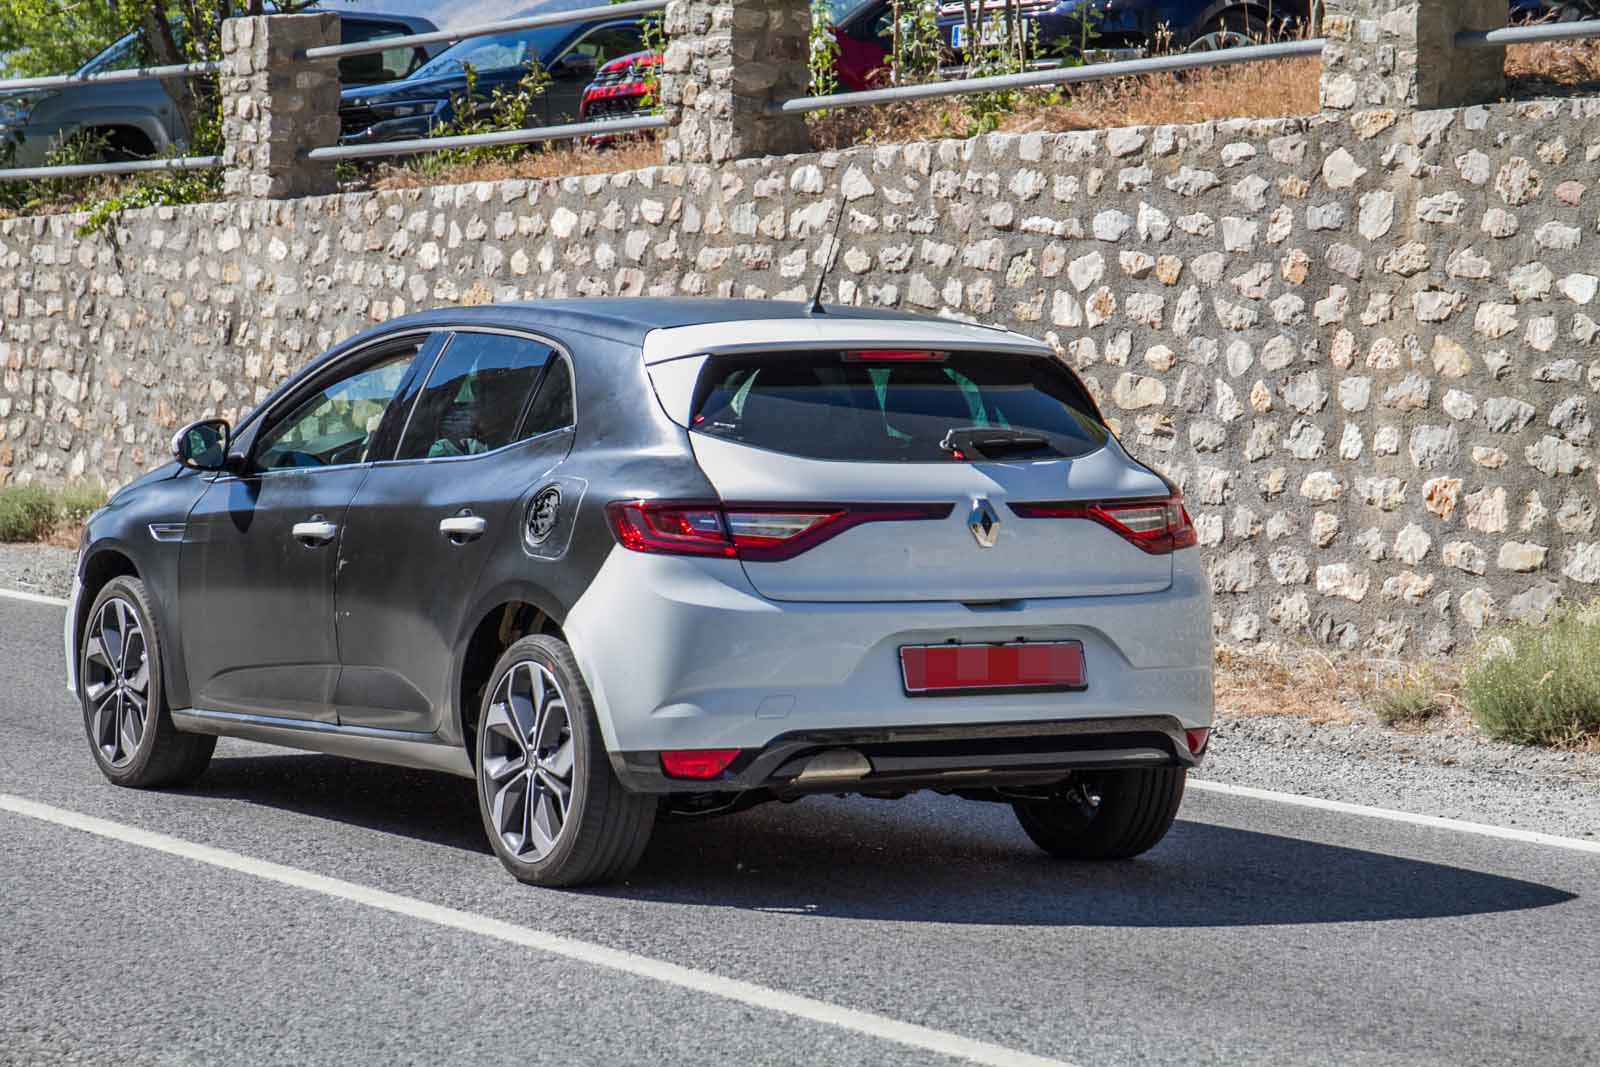 New Renault Megane facelift: plug-in hybrid variant spotted